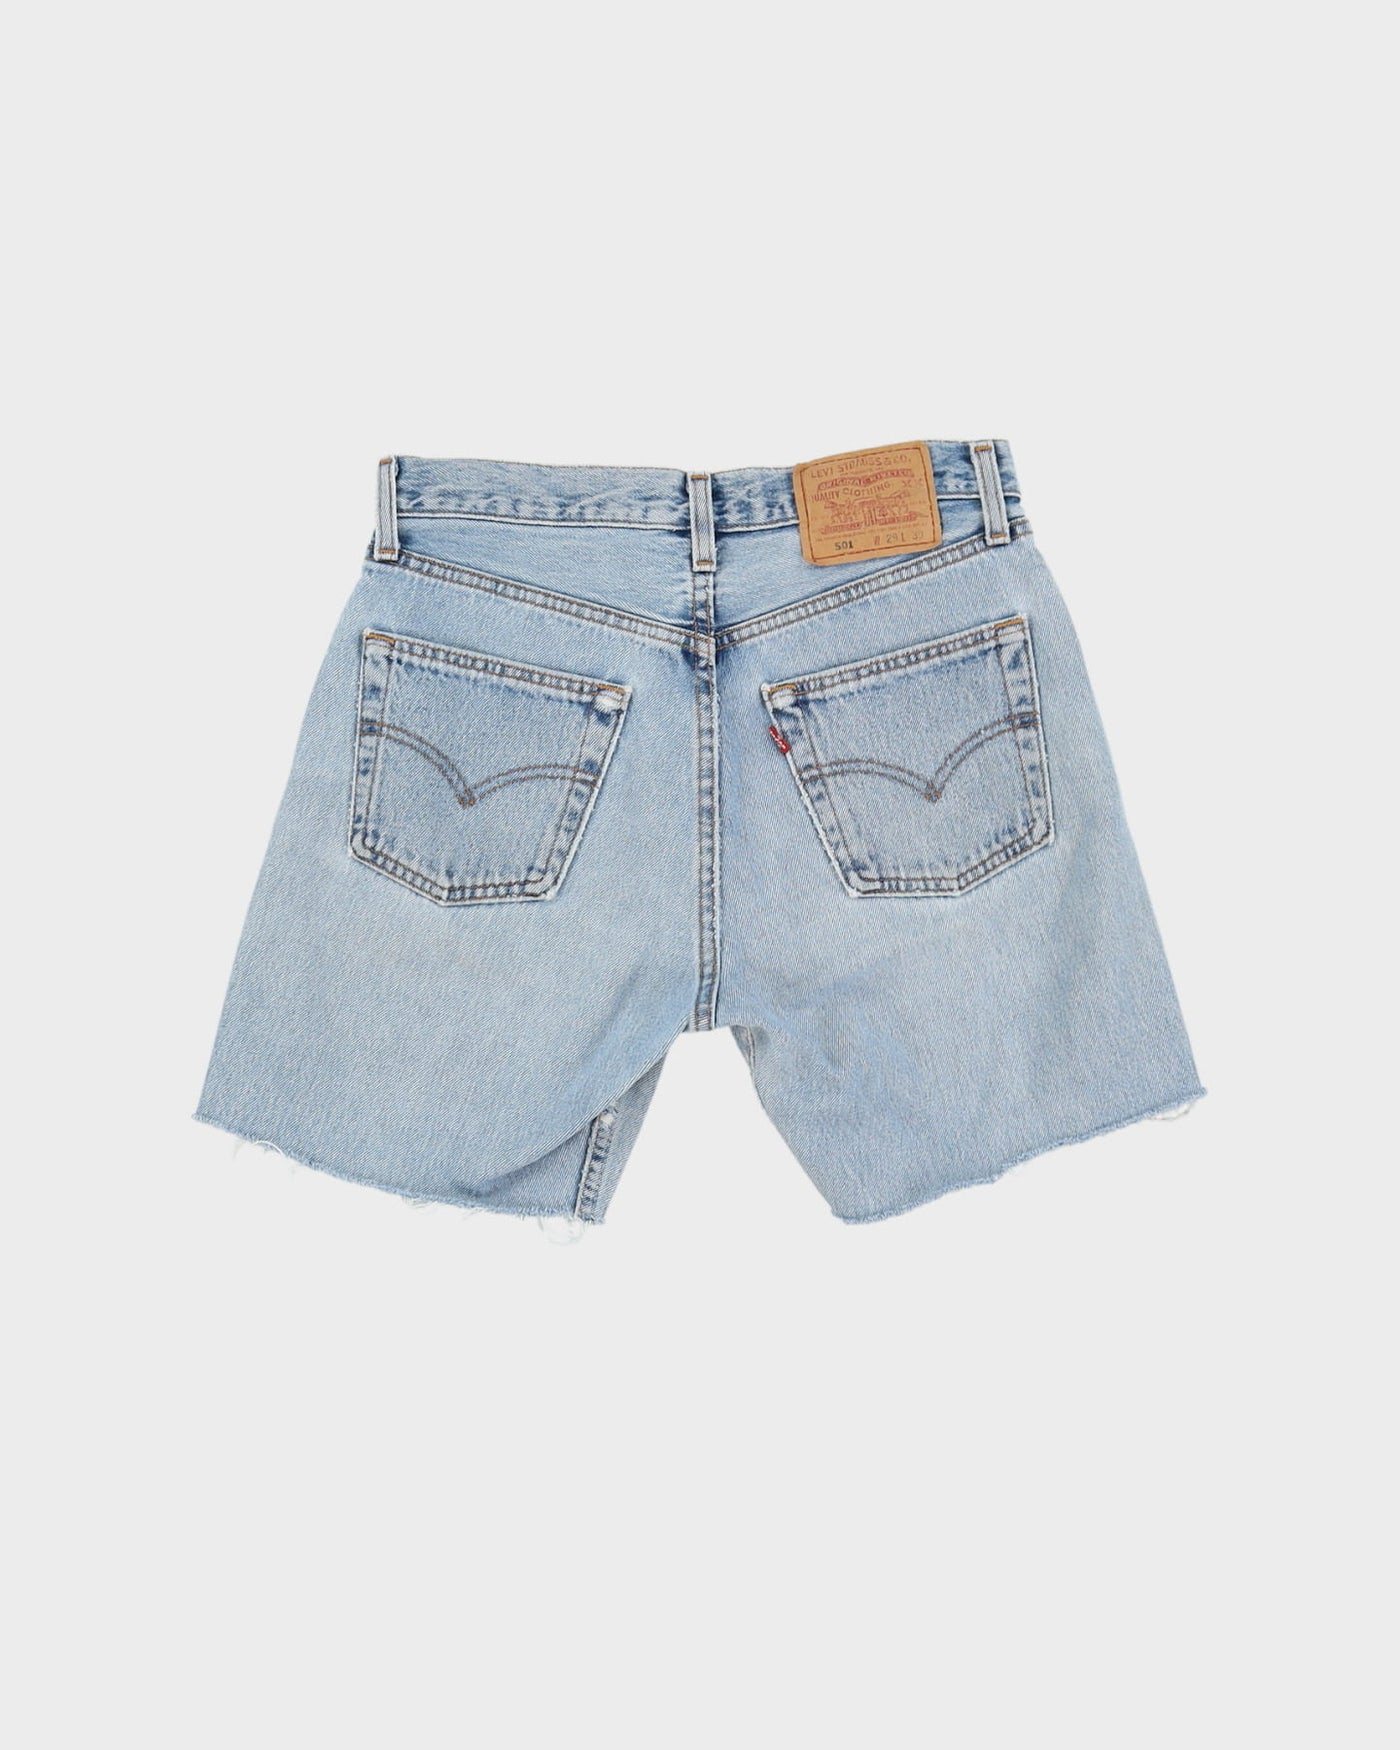 Vintage 80s Levi's Blue Denim Shorts - W27